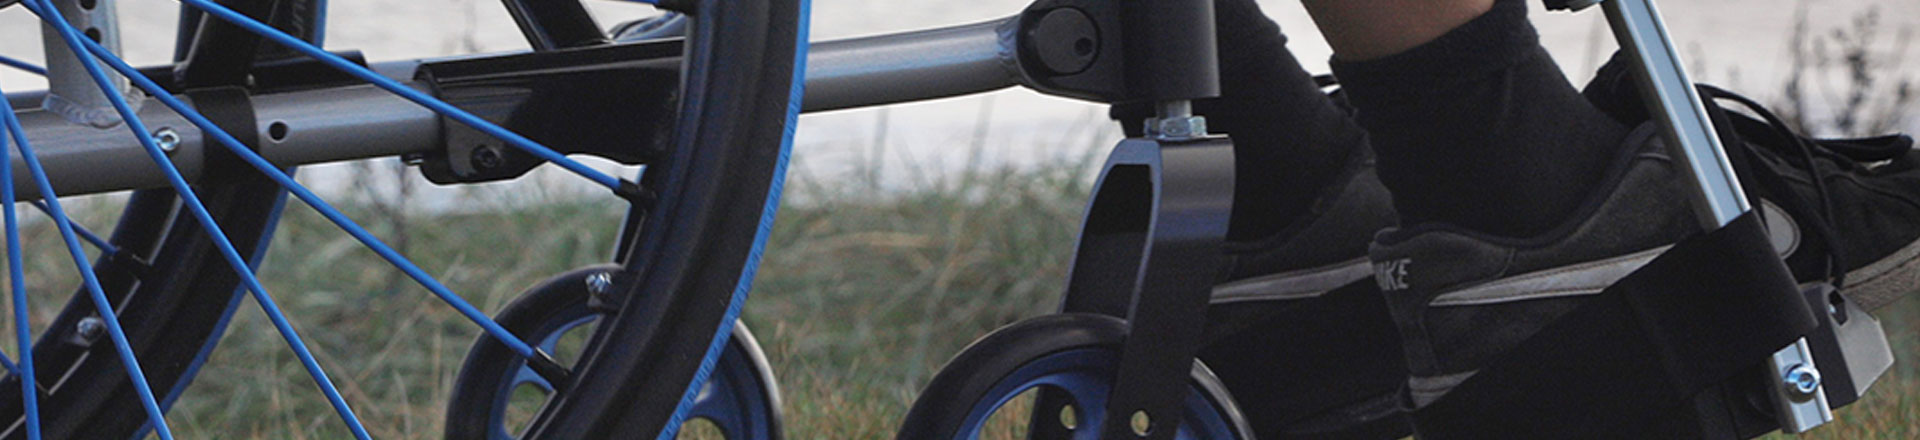 Fauteuils roulants / pièces d’détachées pour fauteuils roulants